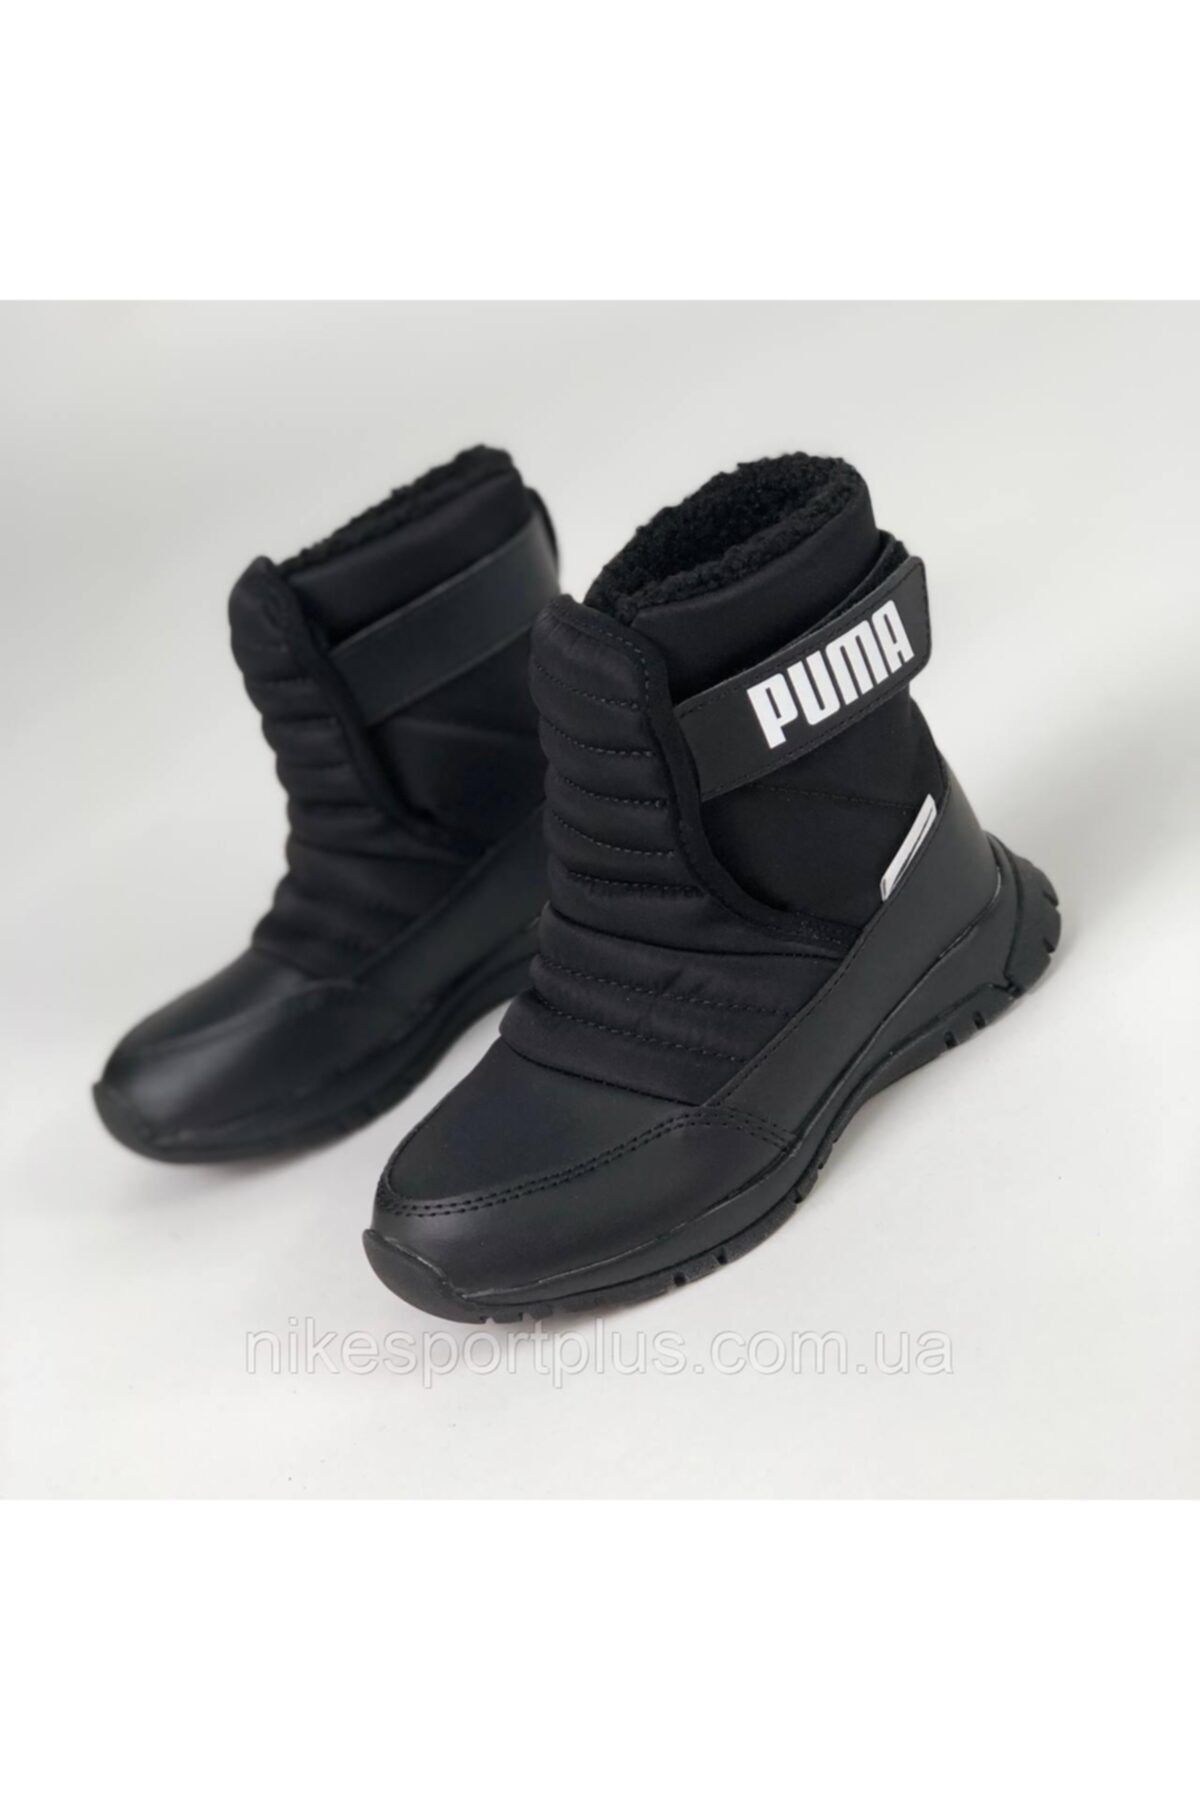 Puma 38074503 Nieve Boot Wtr Ac Ps Black-pum Çocuk Günlük Spor Ayakkabısı